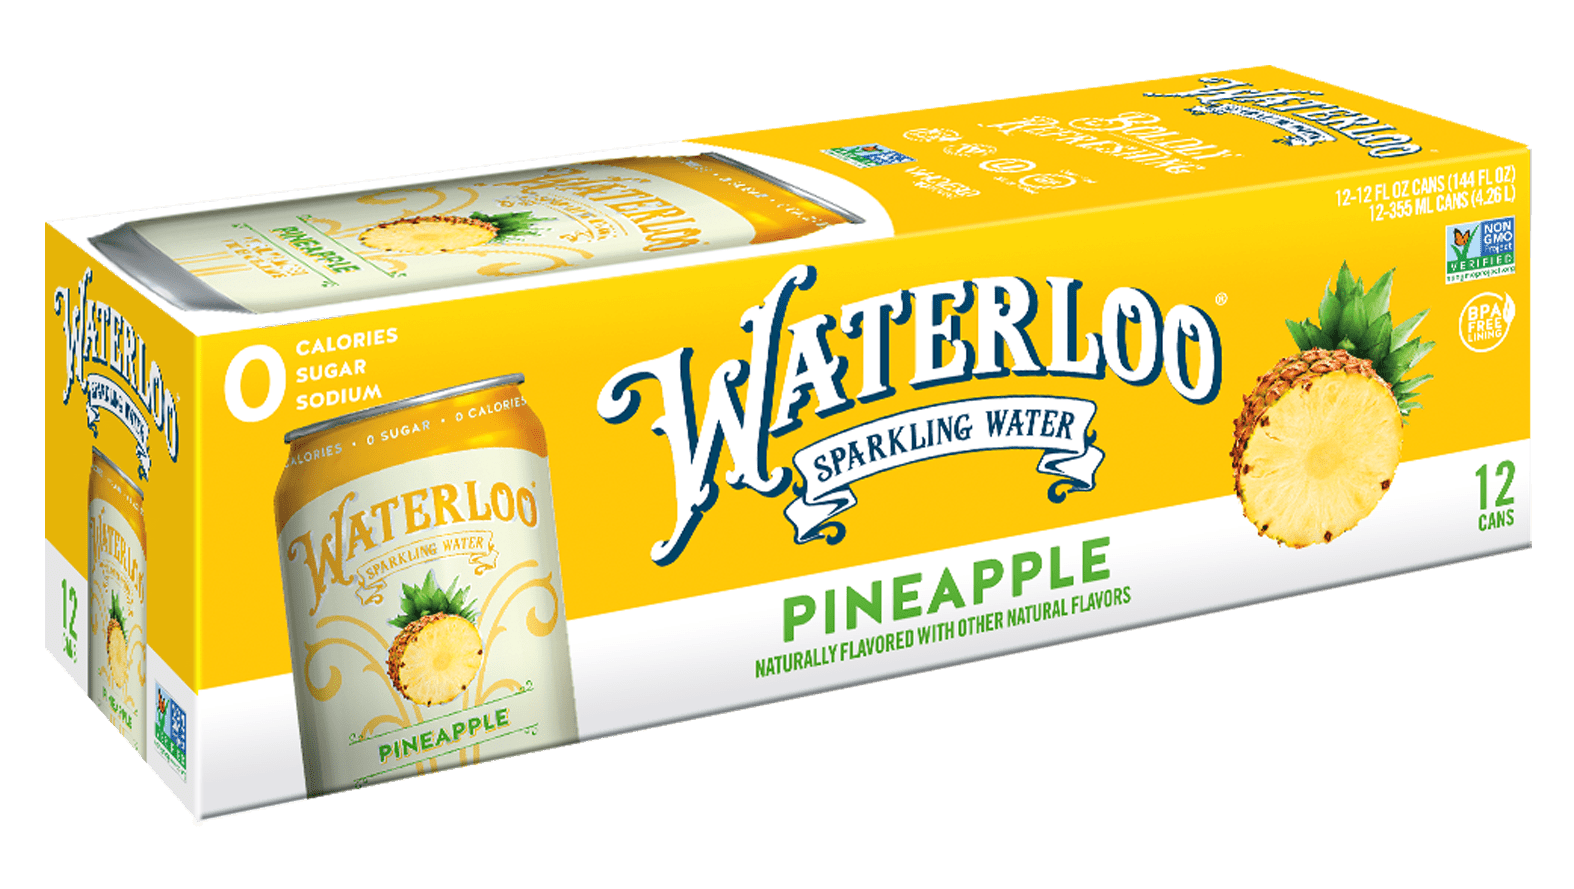 Waterloo Pineapple Sparkling Water 2 innerpacks per case 144.0 fl